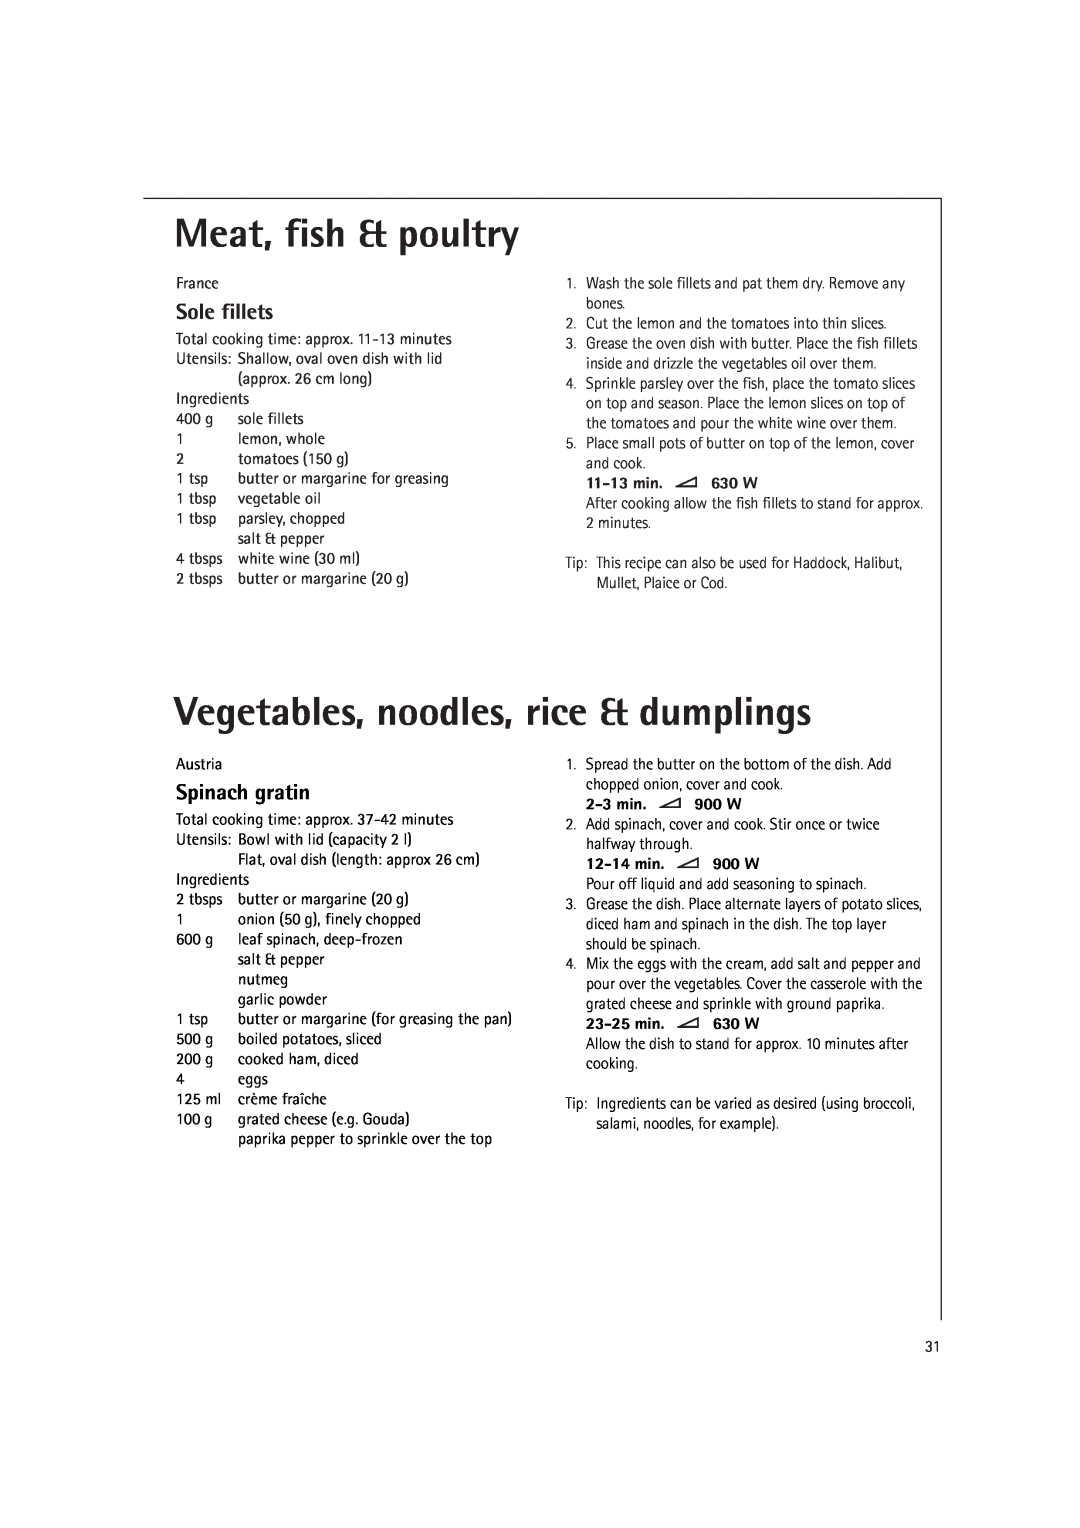 AEG MC2660E Vegetables, noodles, rice & dumplings, Sole fillets, Spinach gratin, Meat, fish & poultry, 11-13 min. 630 W 